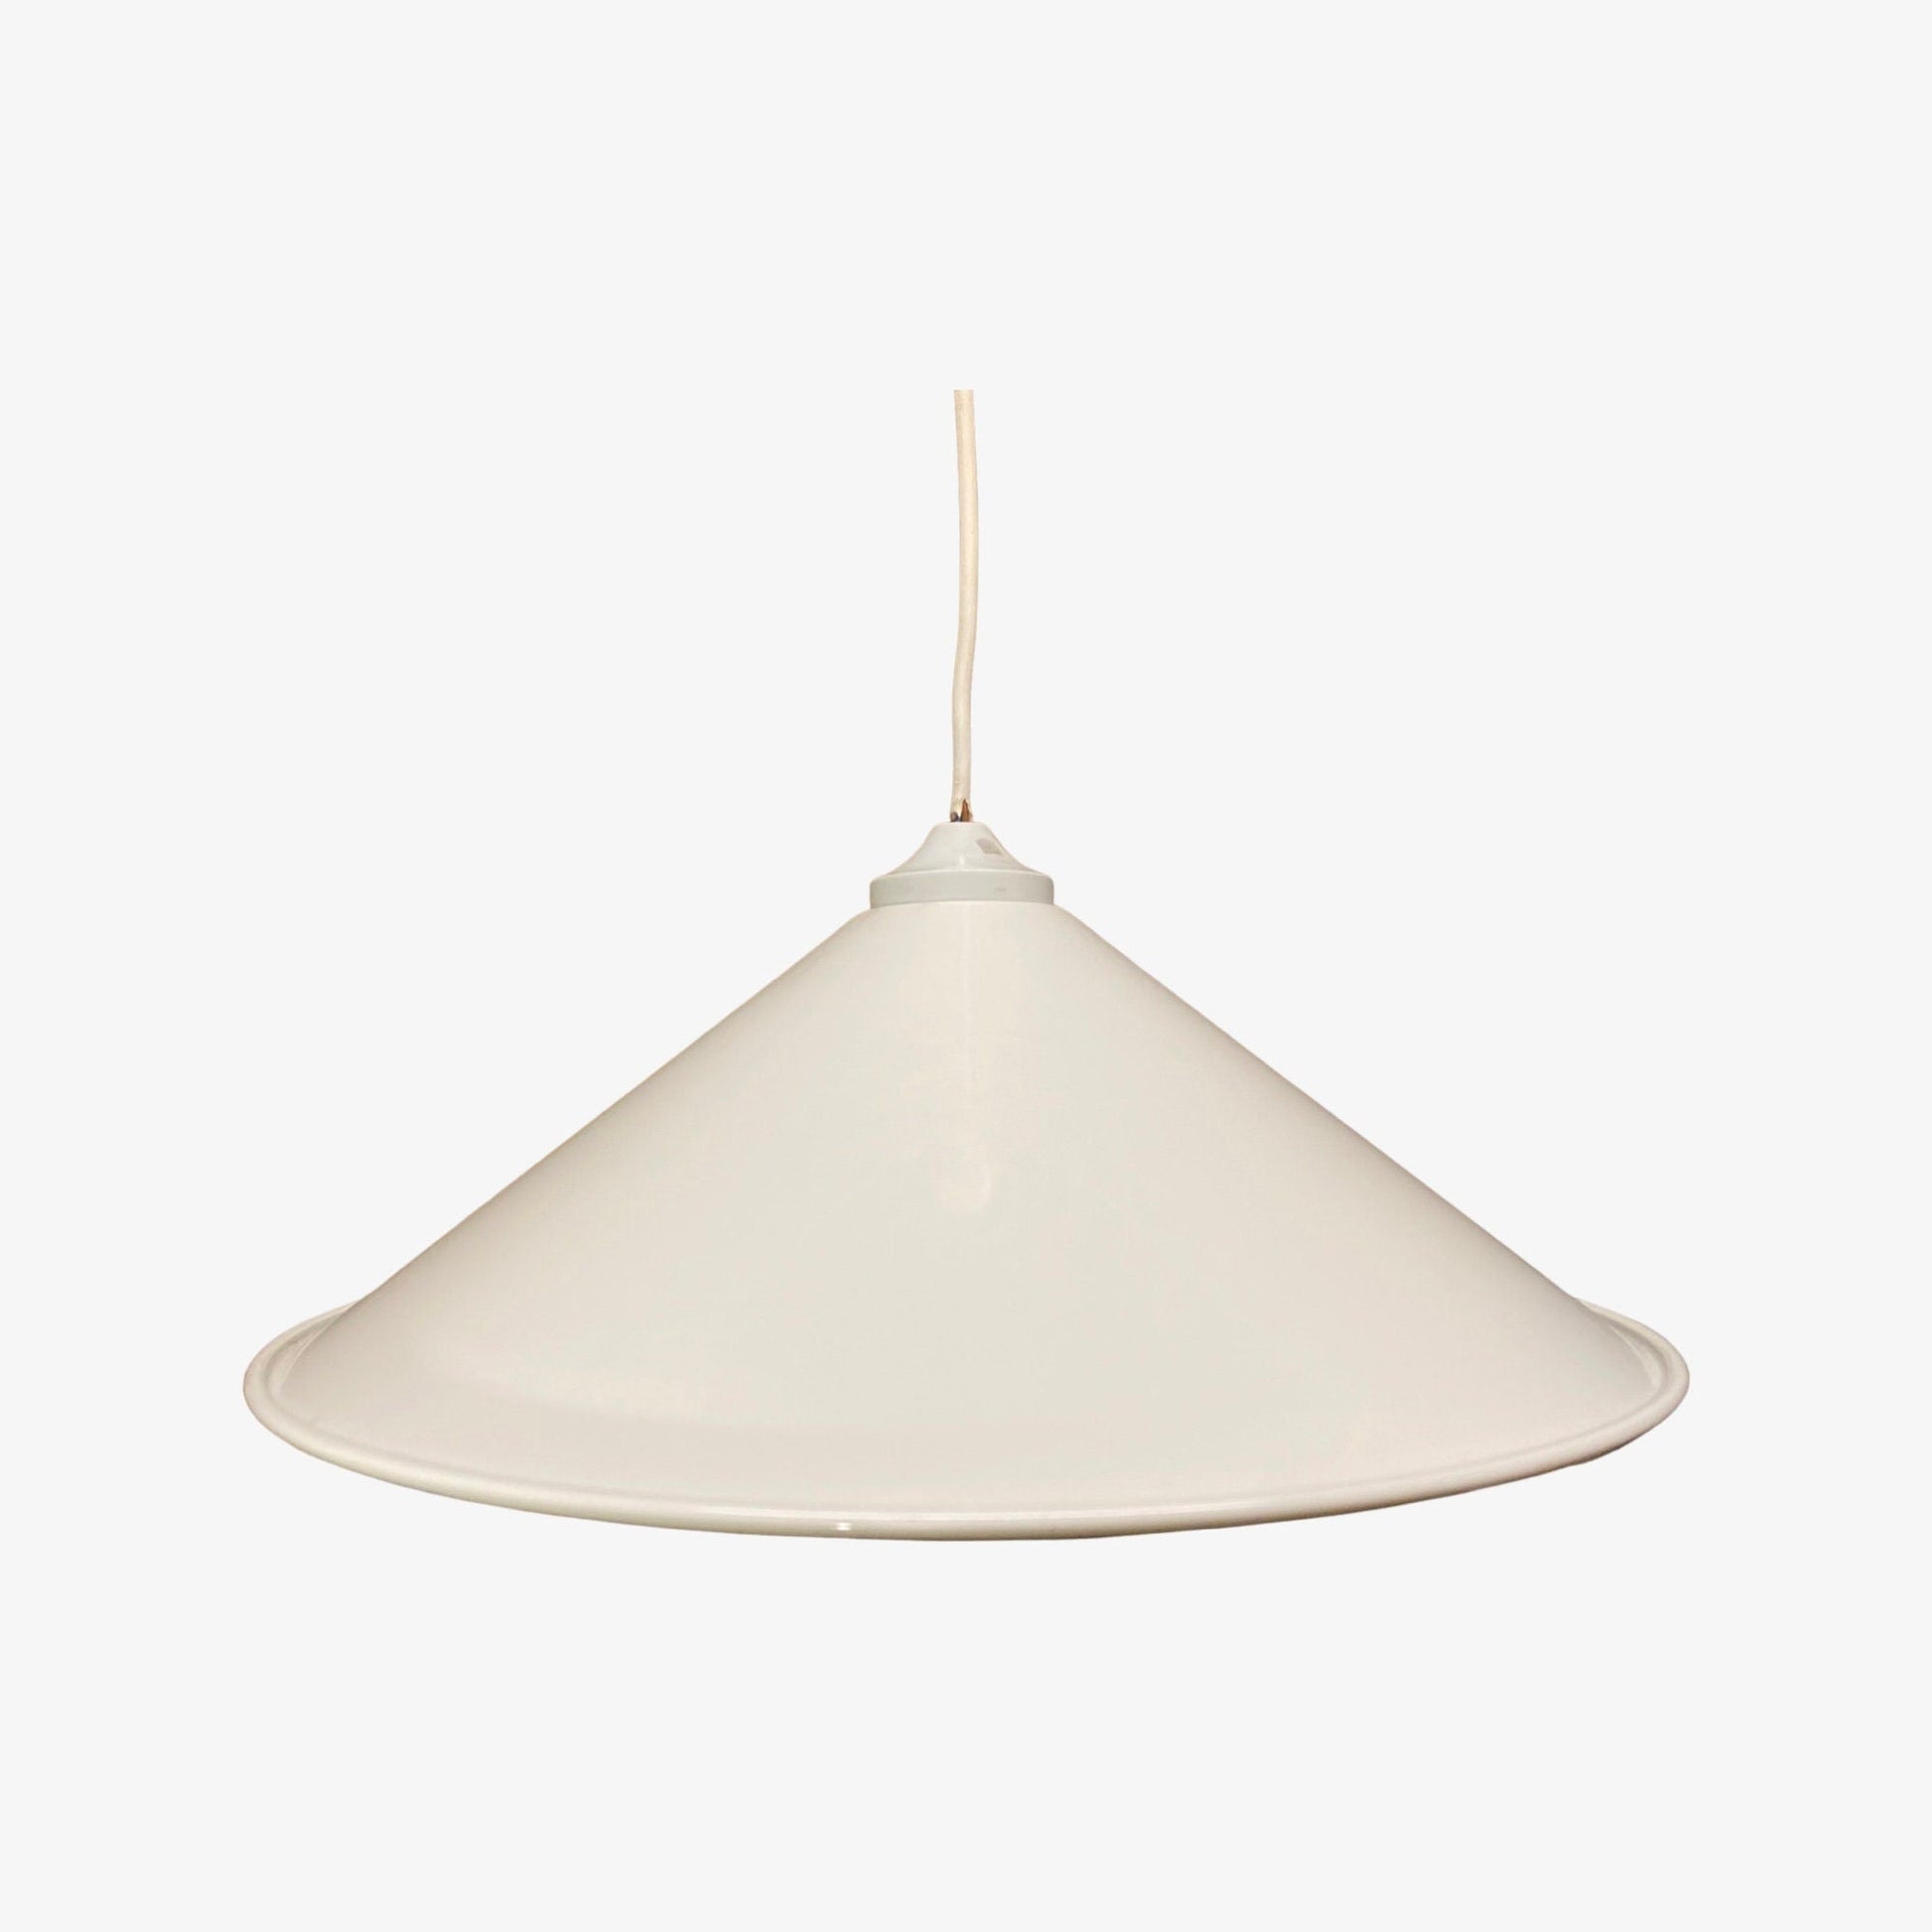 White Retro Swedish Hanging Light | Enamel Designer Lamp from Sweden, 1960s, 1970s | Scandinavian Modern Lighting | Dia 15.4'' / 39cm Active - FancyVintage.nl -